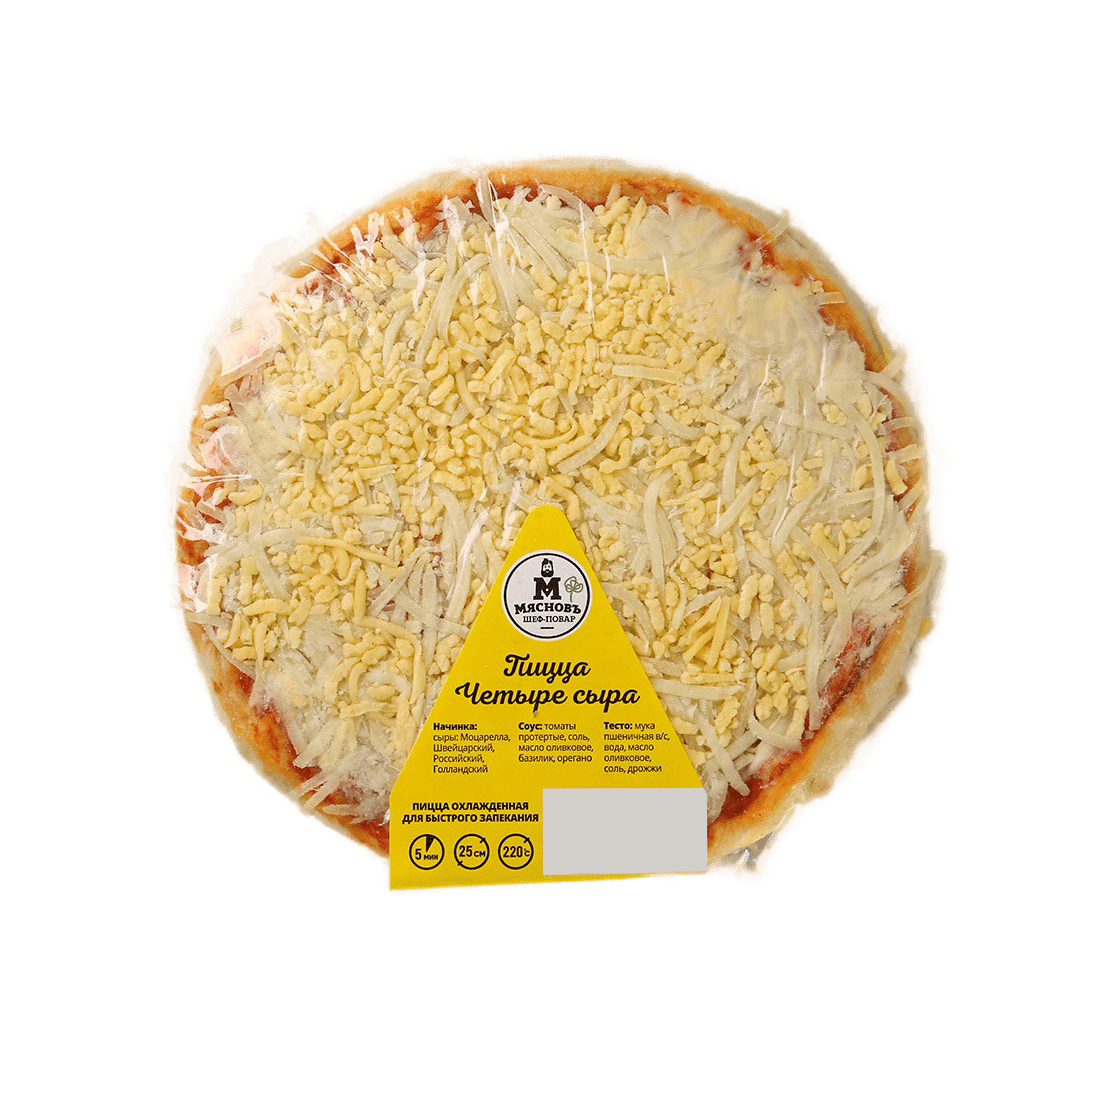 Пицца МясновЪ ШЕФ-ПОВАР Четыре сыра для запекания 25 см 330 г